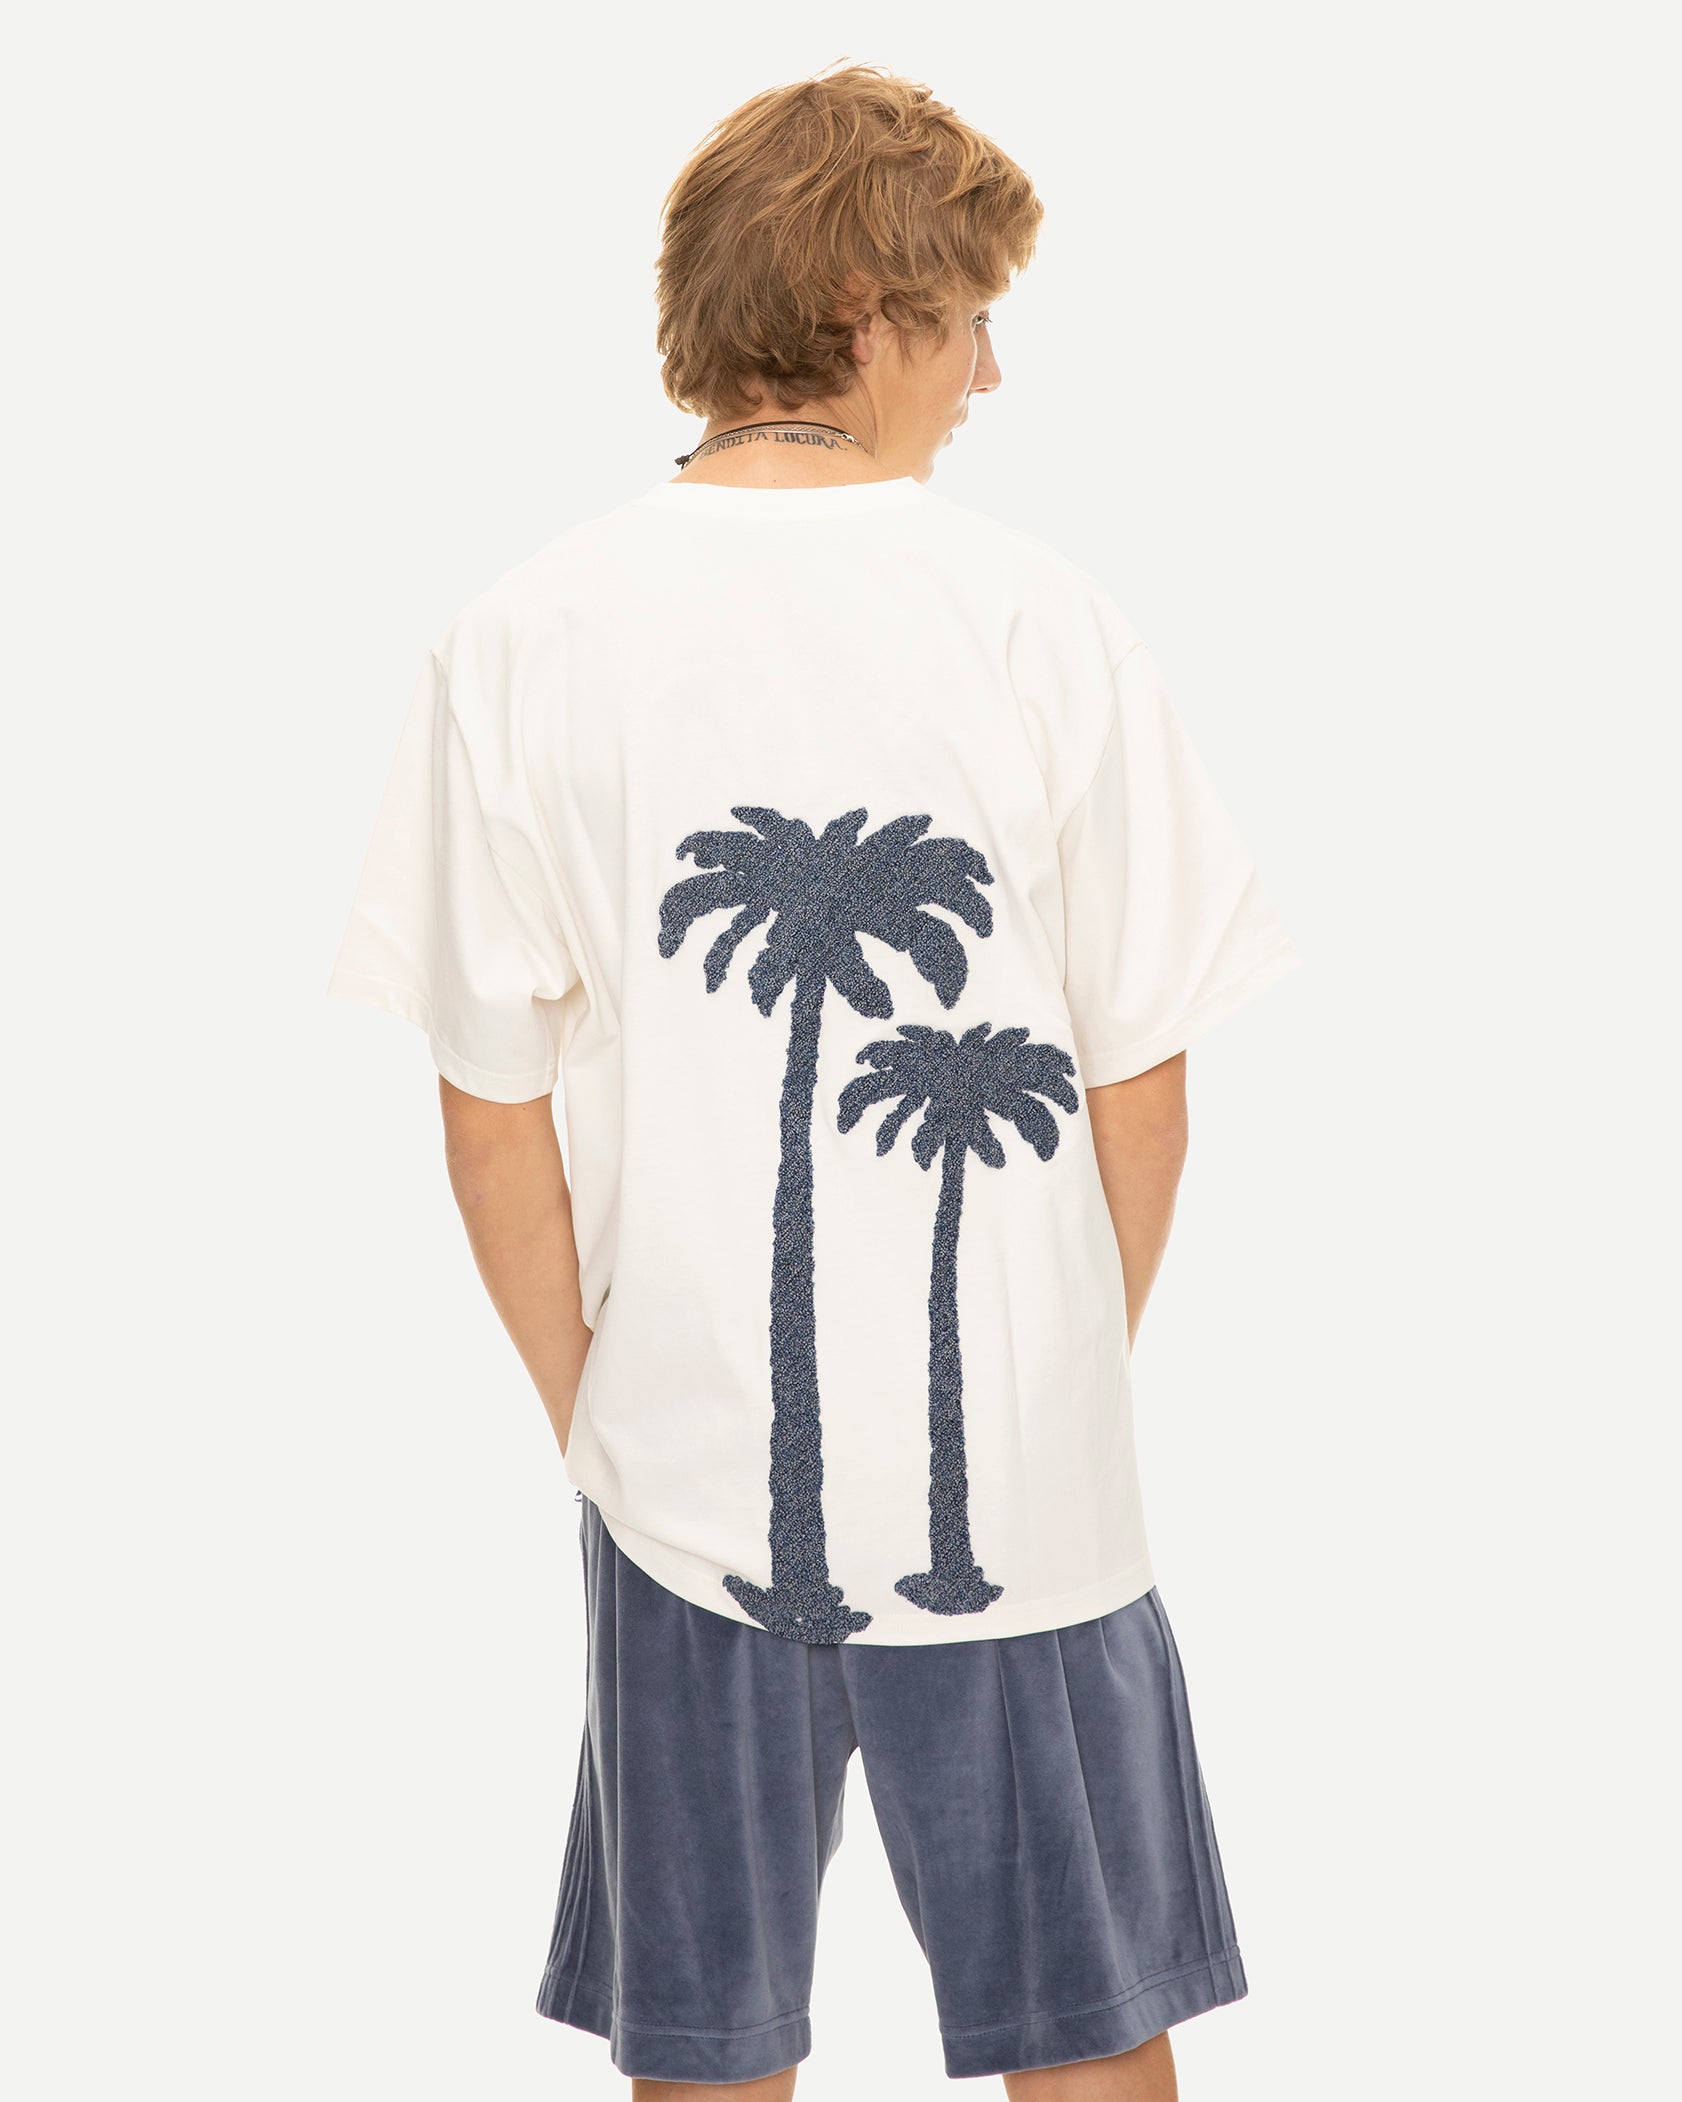 Tee shirt de luxe pour homme Erevan, en maille de coton, col rond, palmier brodé dos, fabriqué au portugal